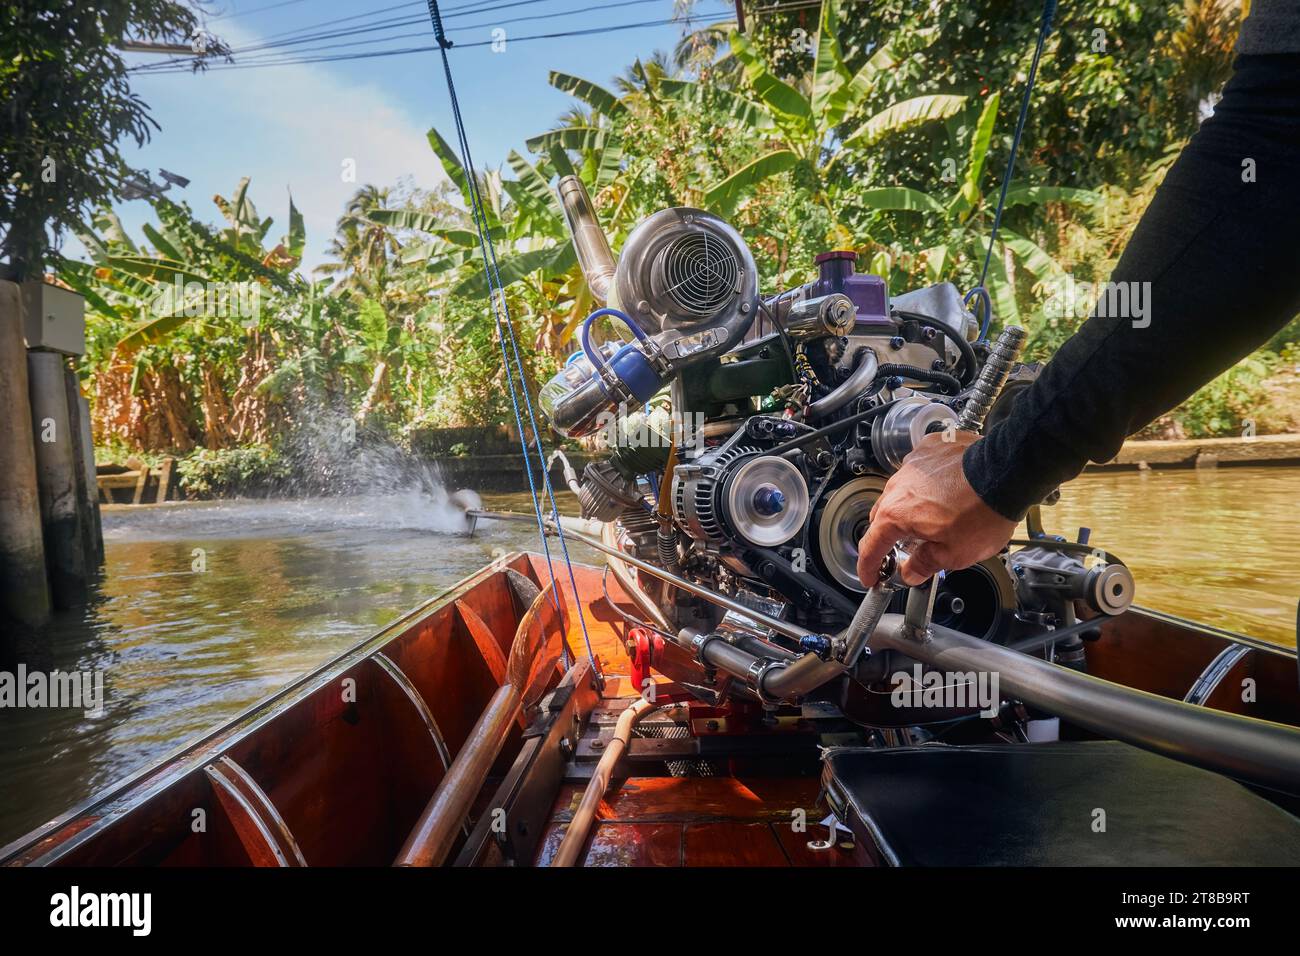 Leistungsstarker Motor eines traditionellen Langboot in Thailand. Hand-of-Drive-Steuerboot in schmalen Wasserkanal, der zum schwimmenden Markt Damnoen Saduak führt. Stockfoto